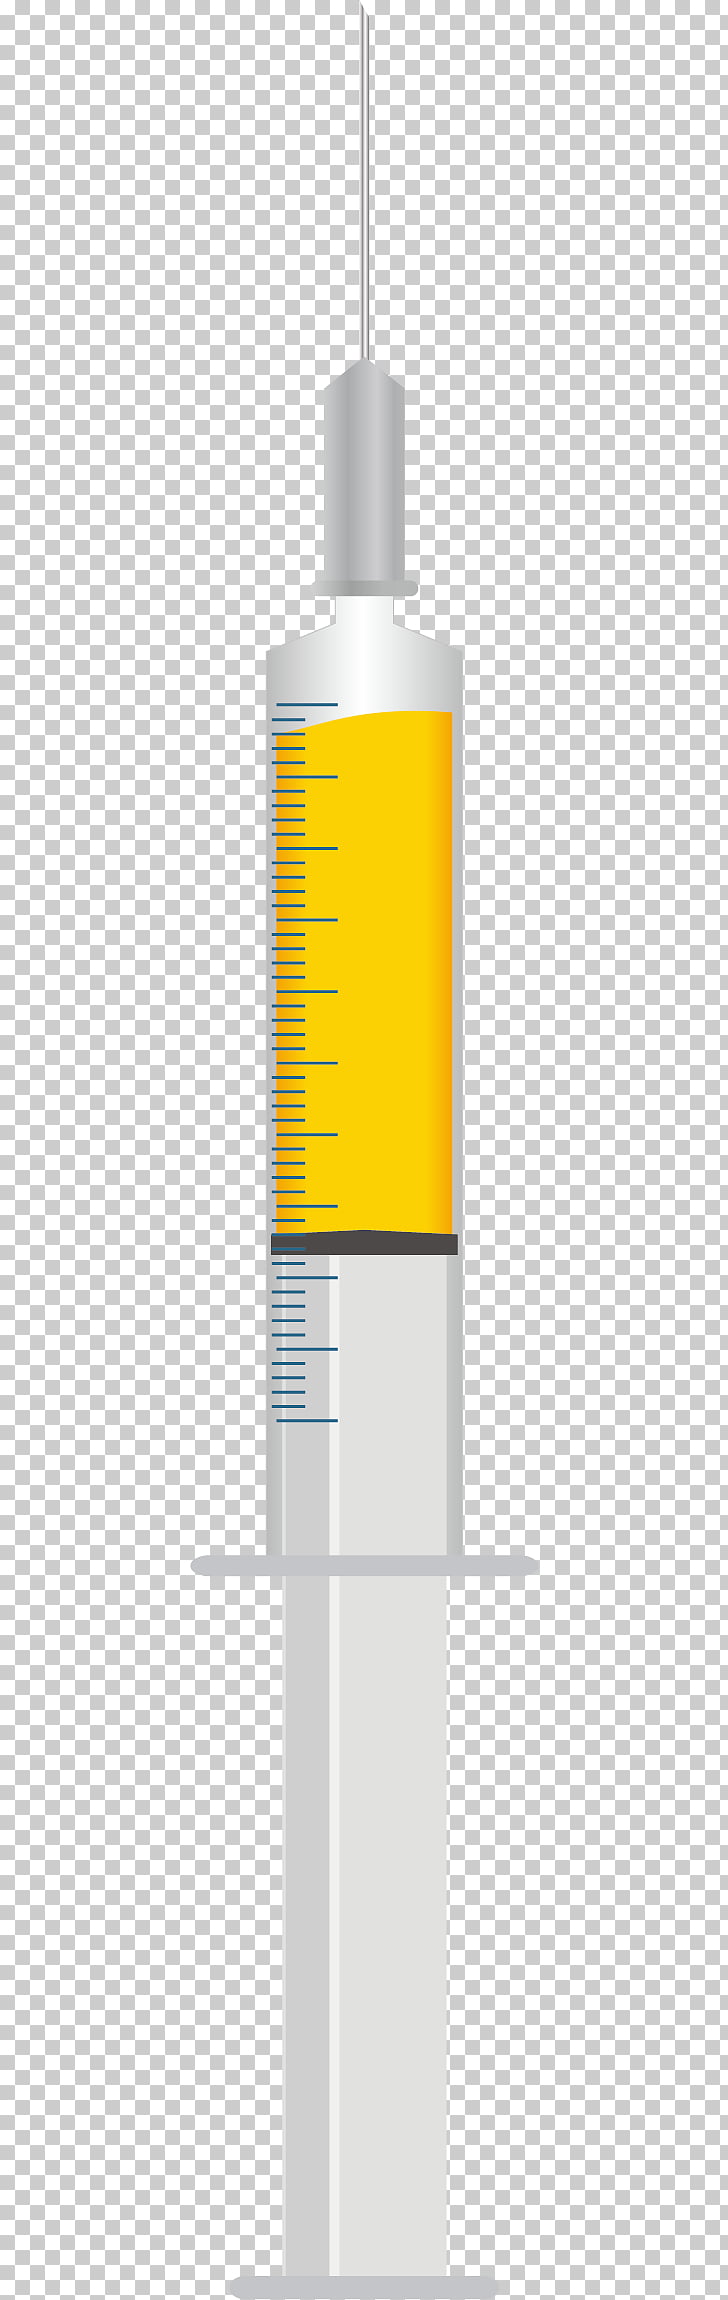 Yellow font syringe.